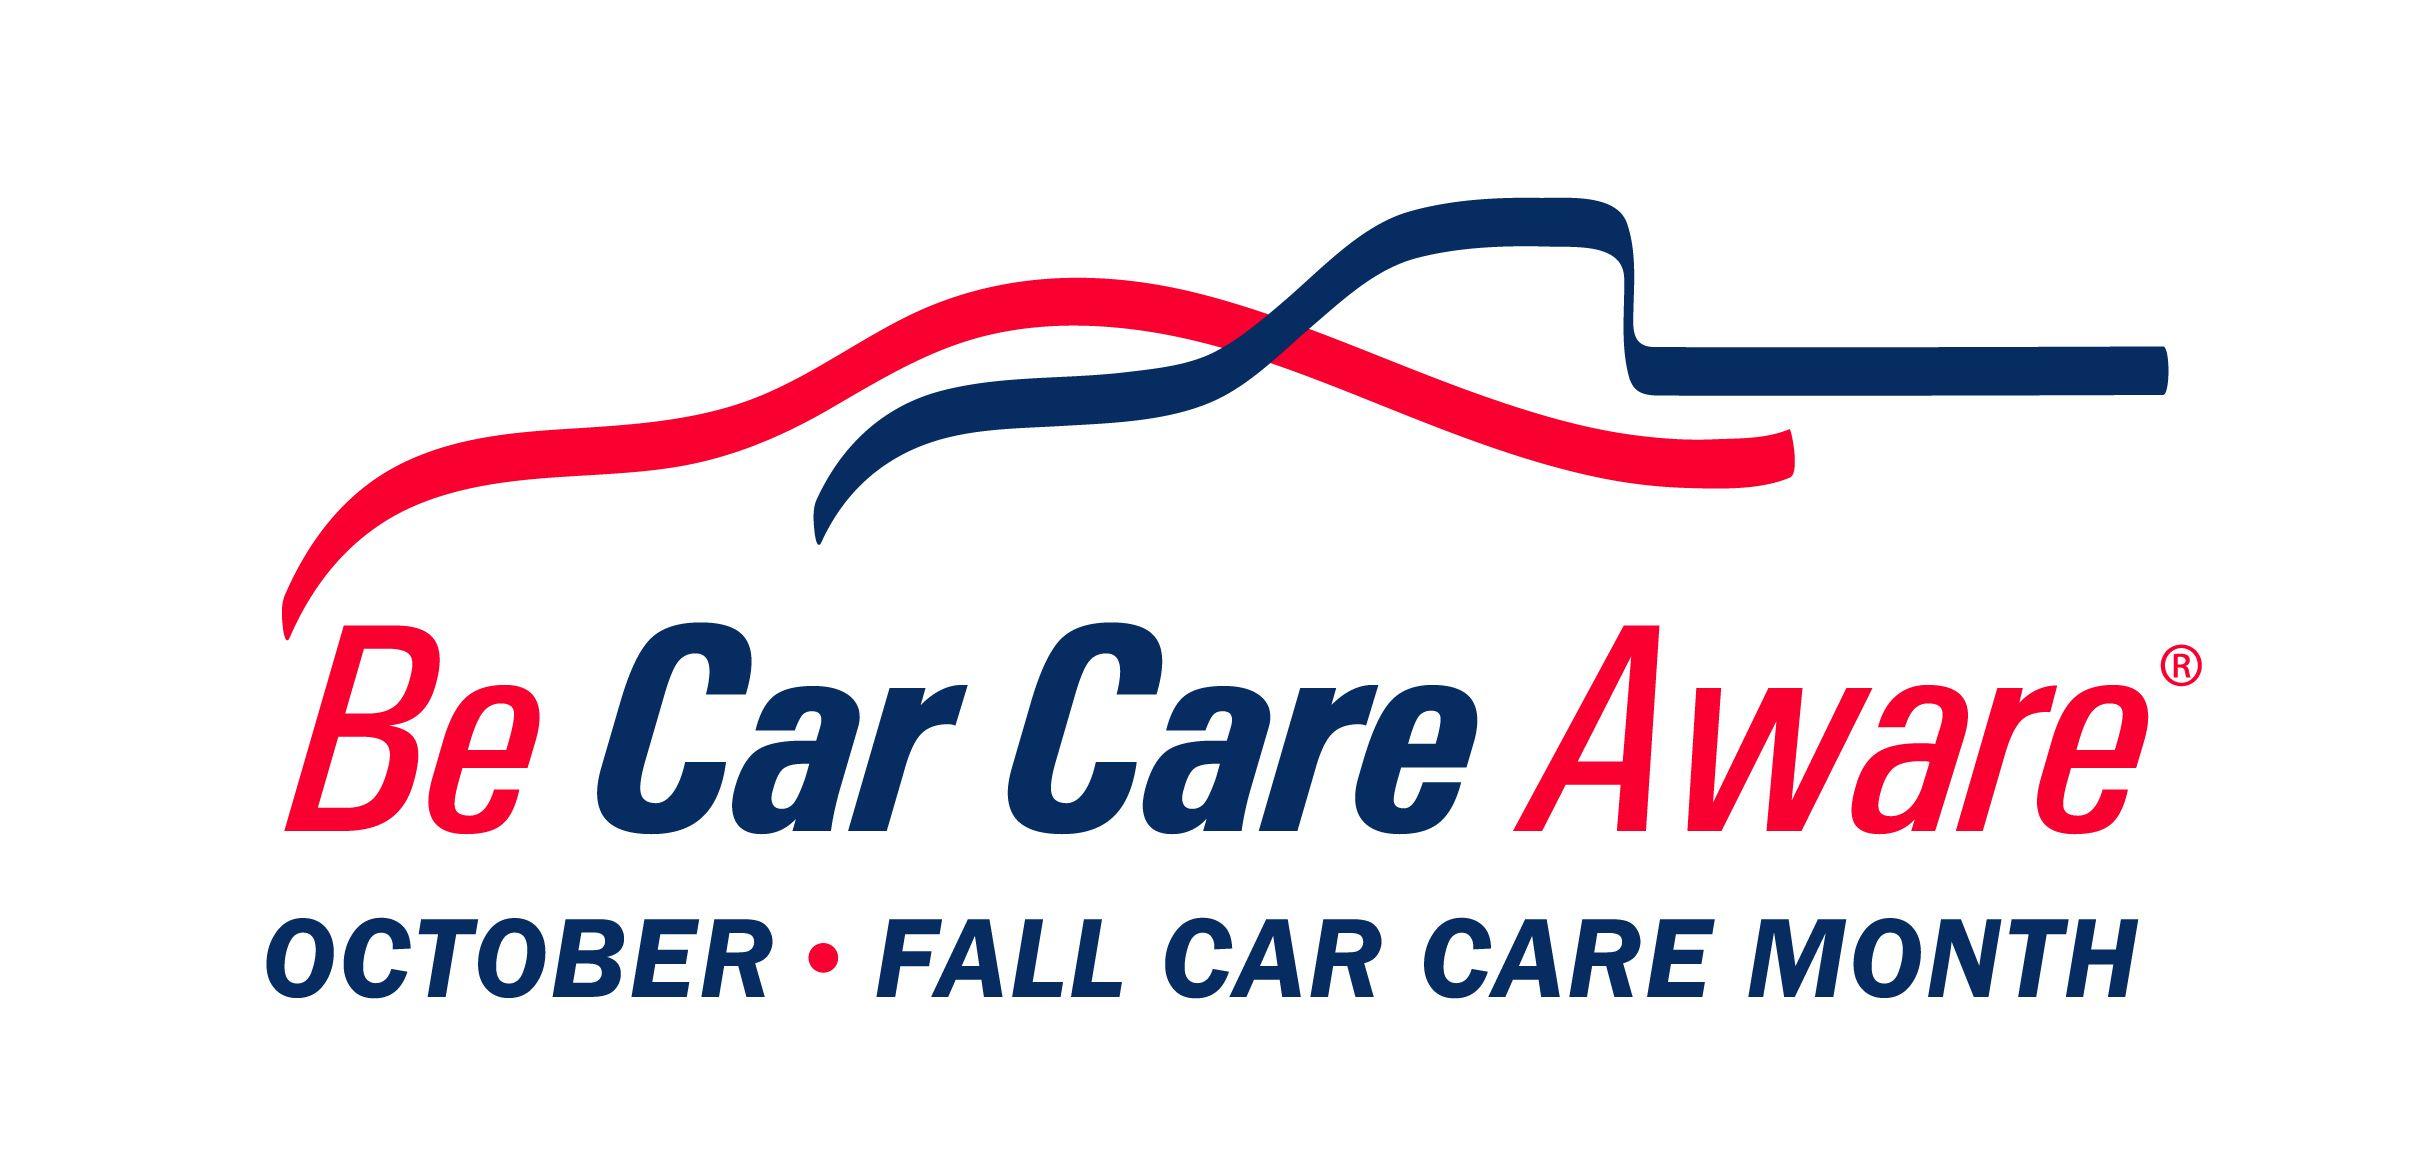 Auto Car Shop Logo - Logos- Be Car Care Aware Logos